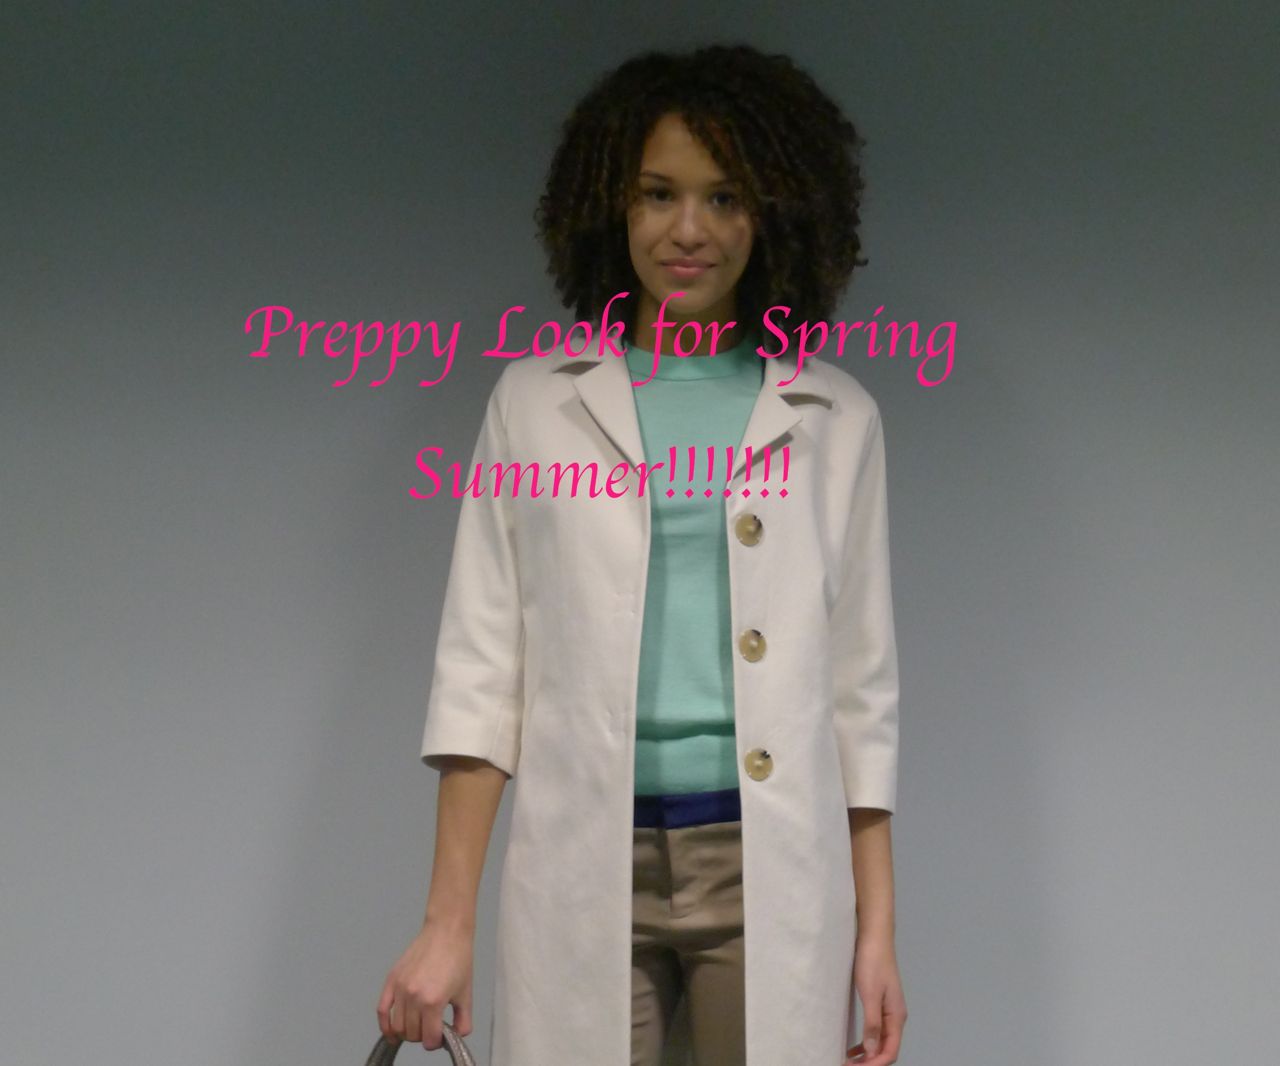 <!--:en-->A Pretty Preppy Look for Spring!!!!!!!!<!--:-->